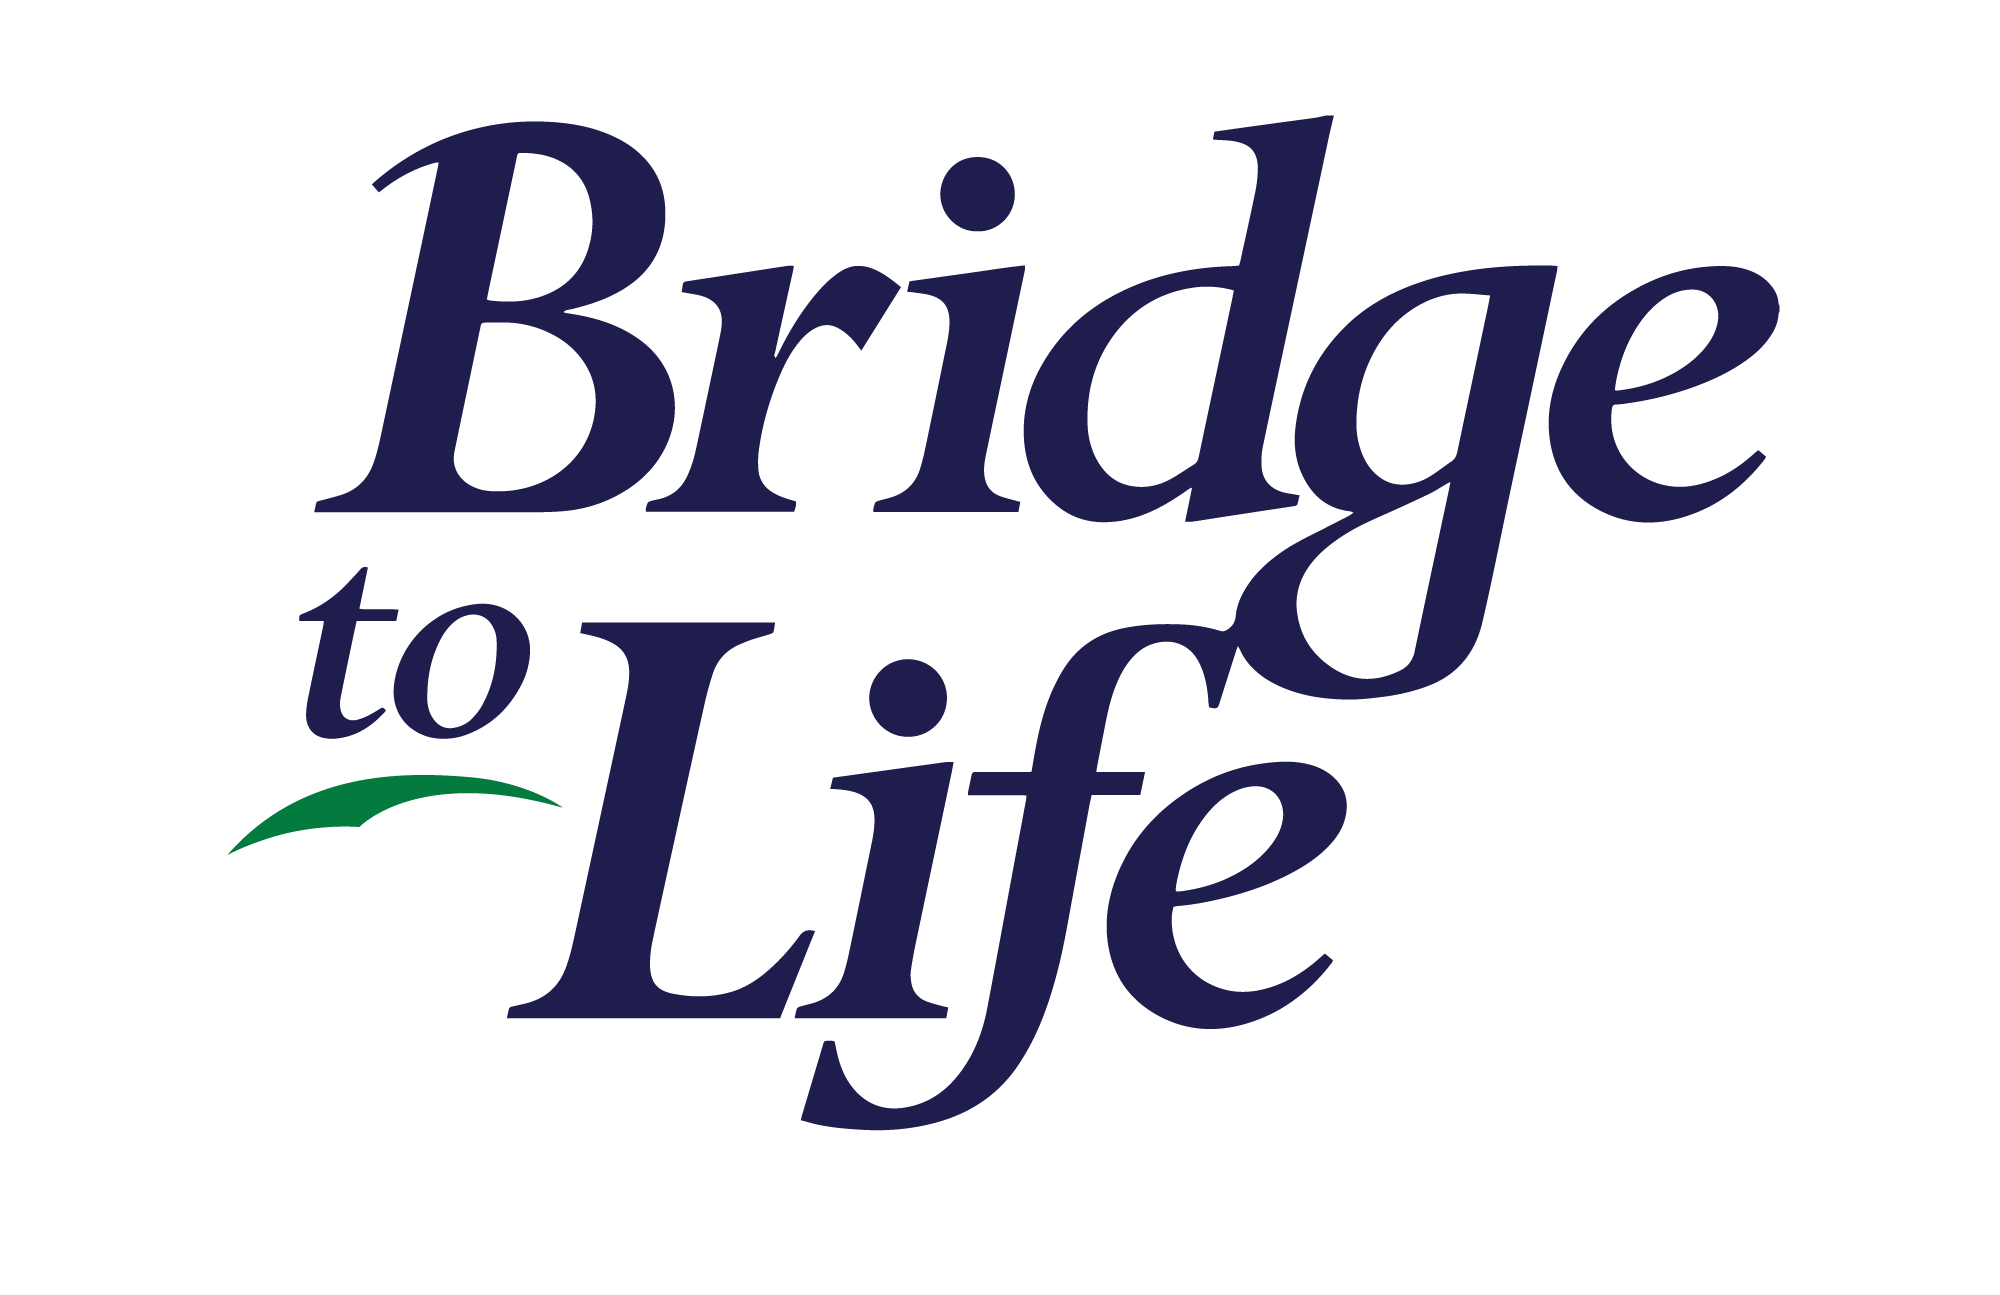 Bridge to Life